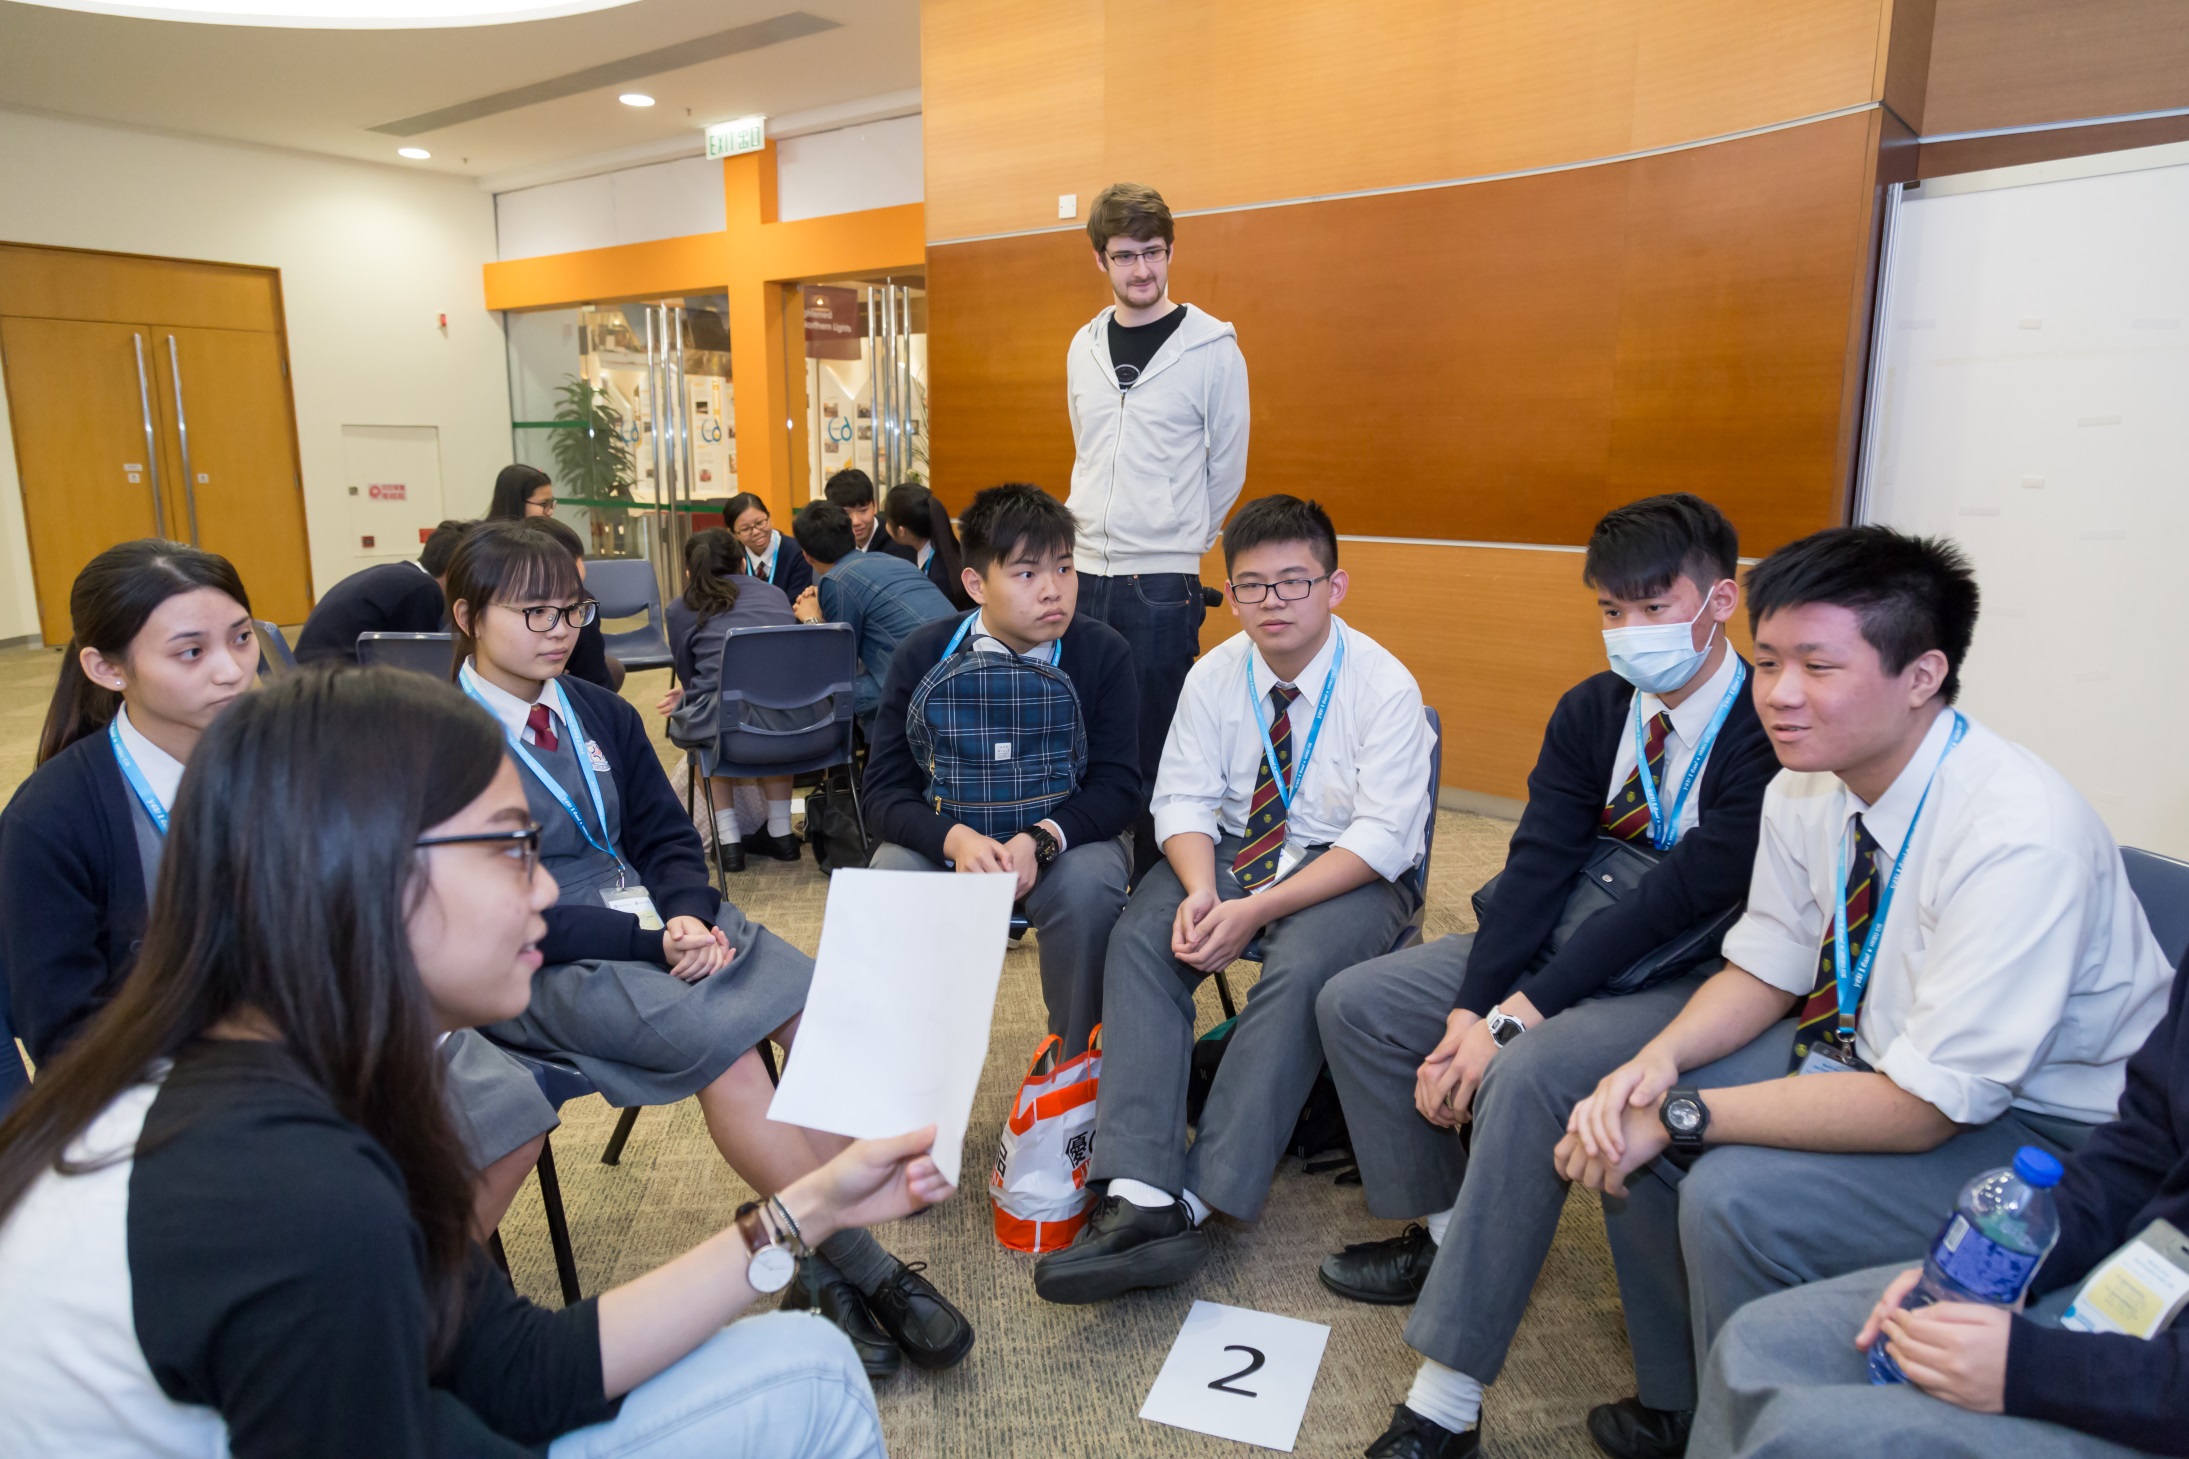 國際學院同學於English Corner活動與中學生輕鬆交流。